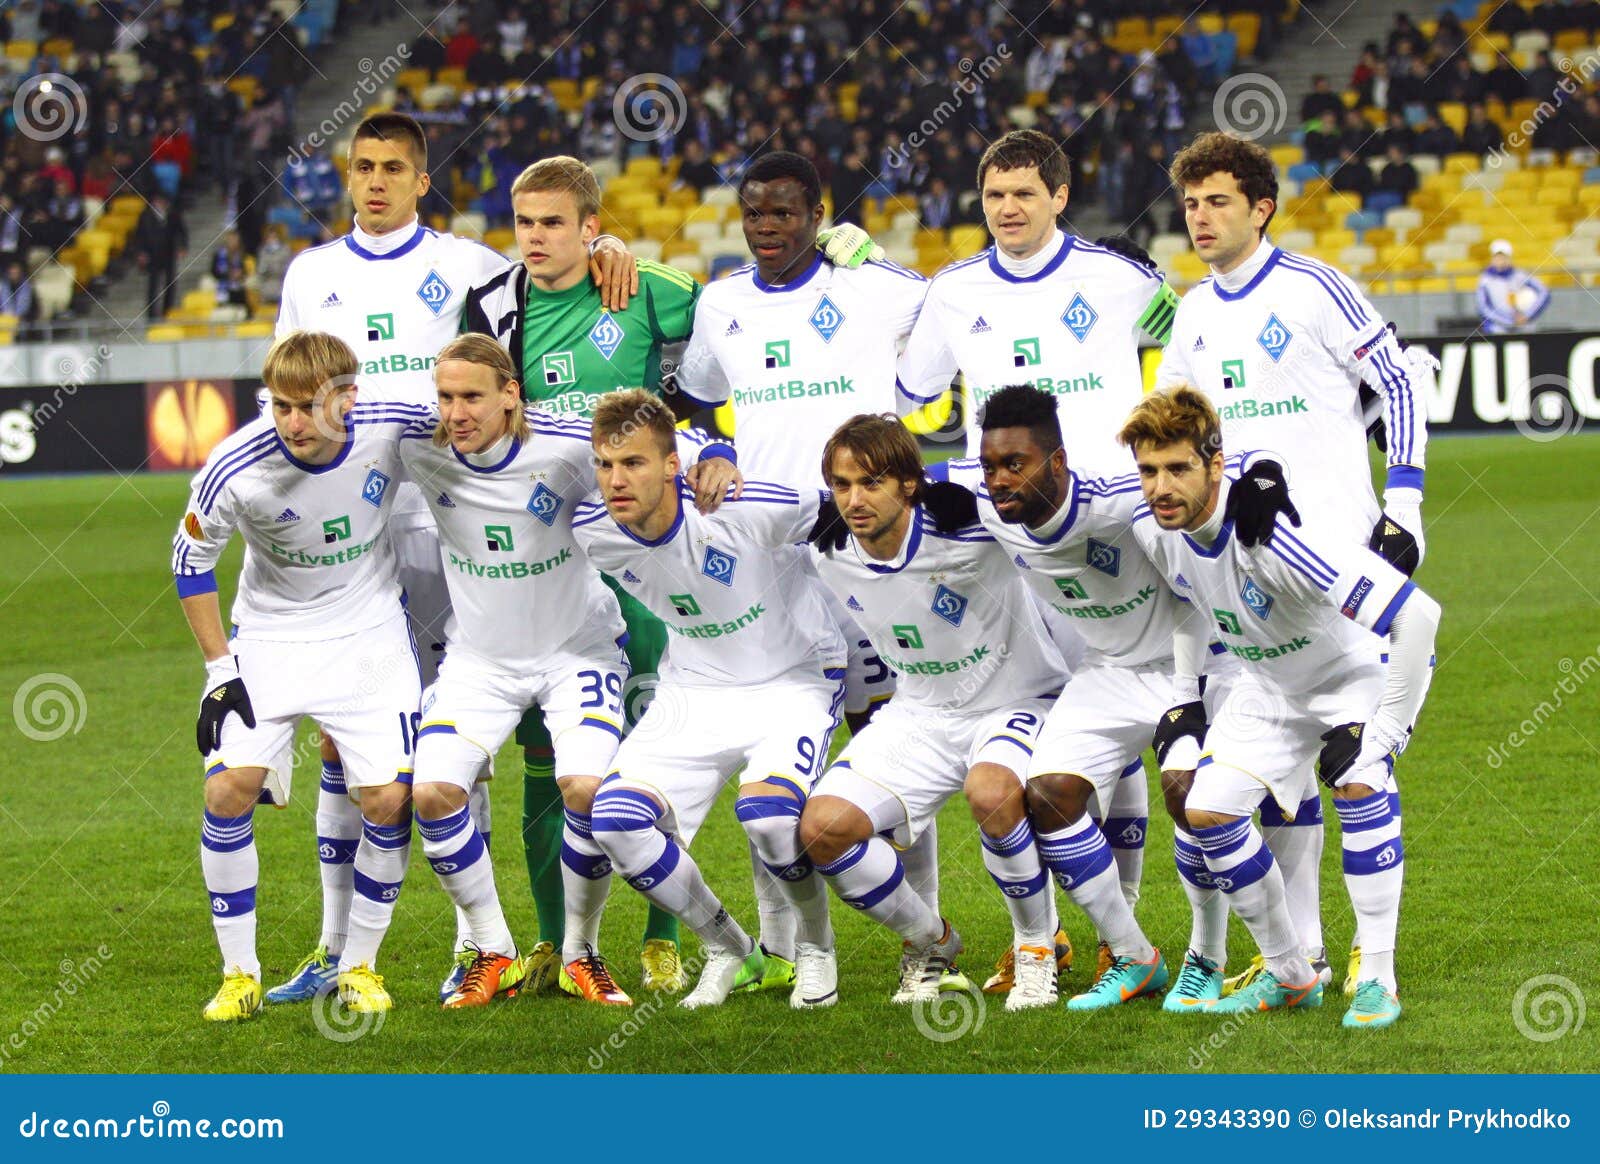 Footbal Club Photo, FC Dynamo Kyiv football results, FC Dynamo Kyiv football team pictures, Wallpaper FC Dynamo Kyiv , FC Dynamo Kyiv football team